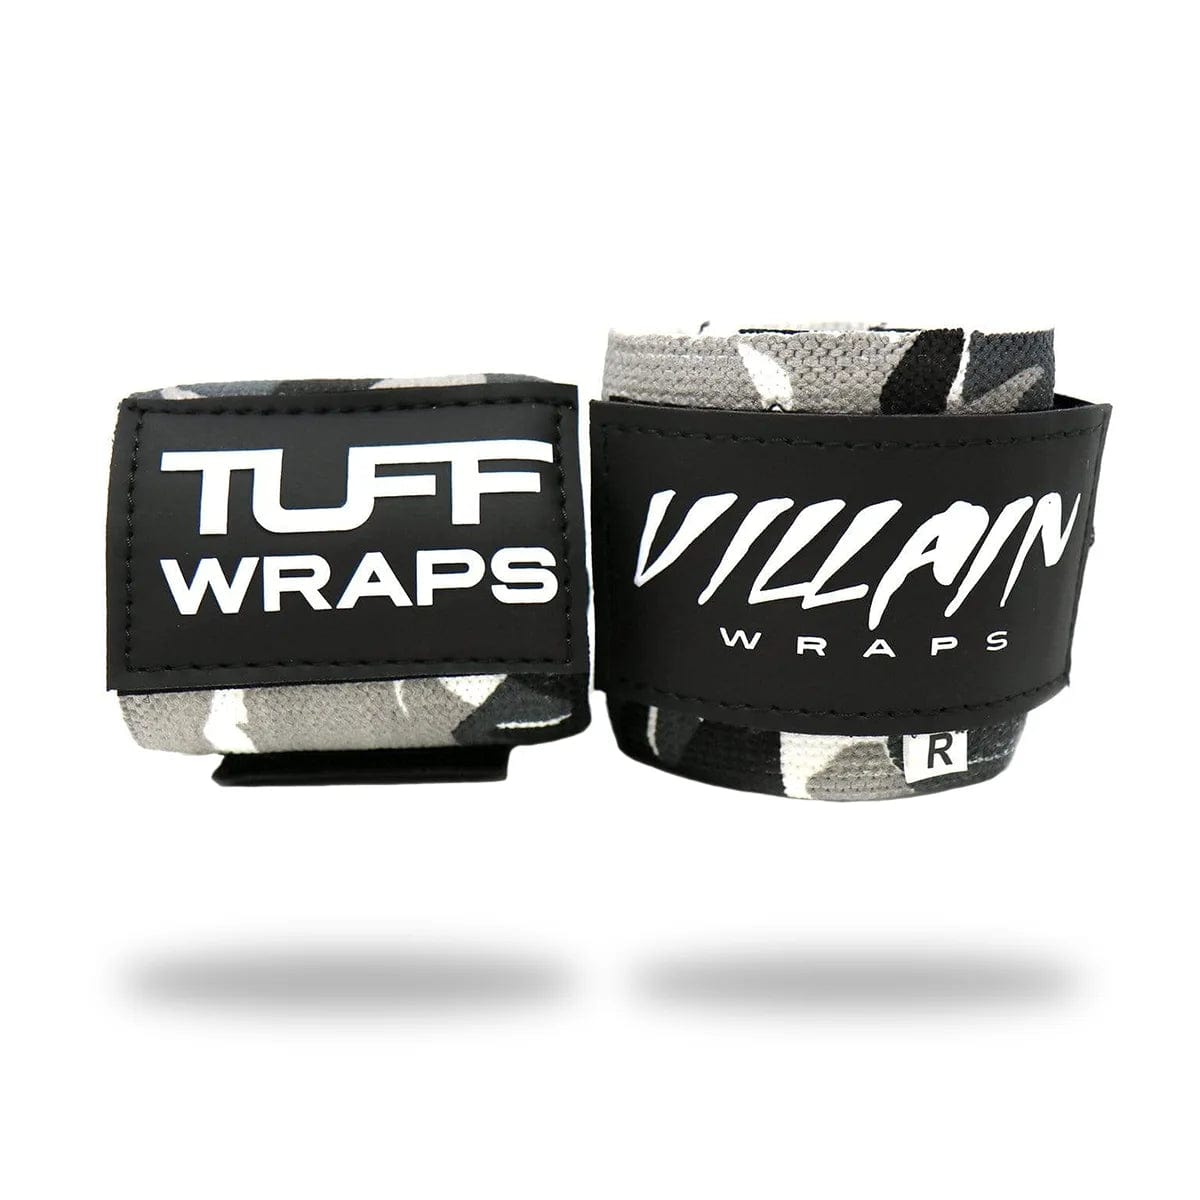 30" Villain Wrist Wraps - Black Camo TuffWraps.com